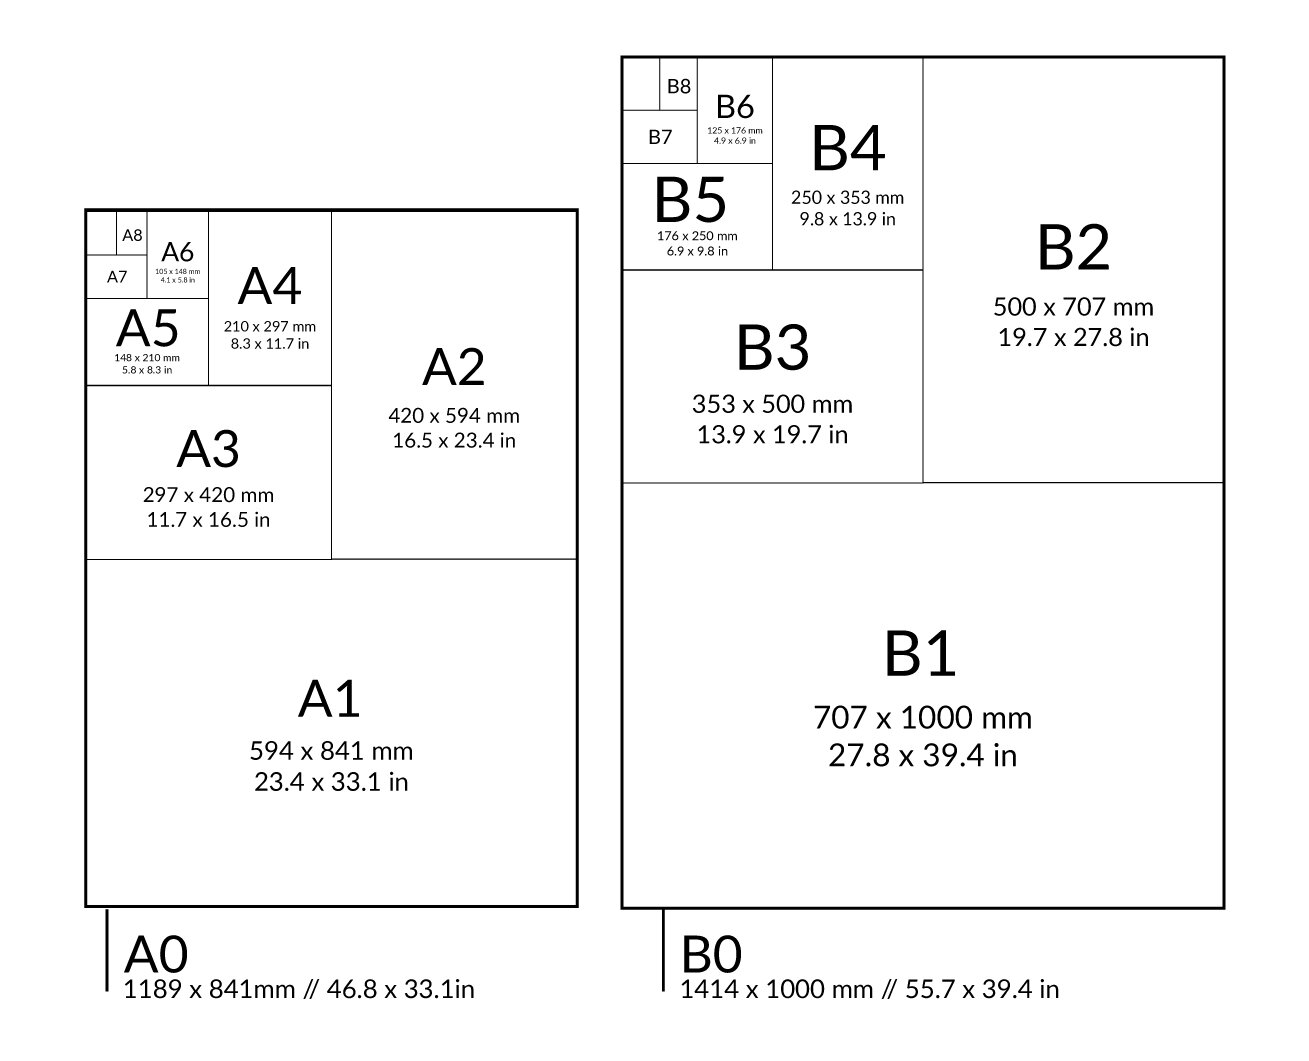 https://images.squarespace-cdn.com/content/v1/571abd61e3214001fb3b9966/1603752441651-I5EA2FEGBWOYNQTDJ37P/A+chart+shows+the+various+Size+A+and+B+paper+dimensions.